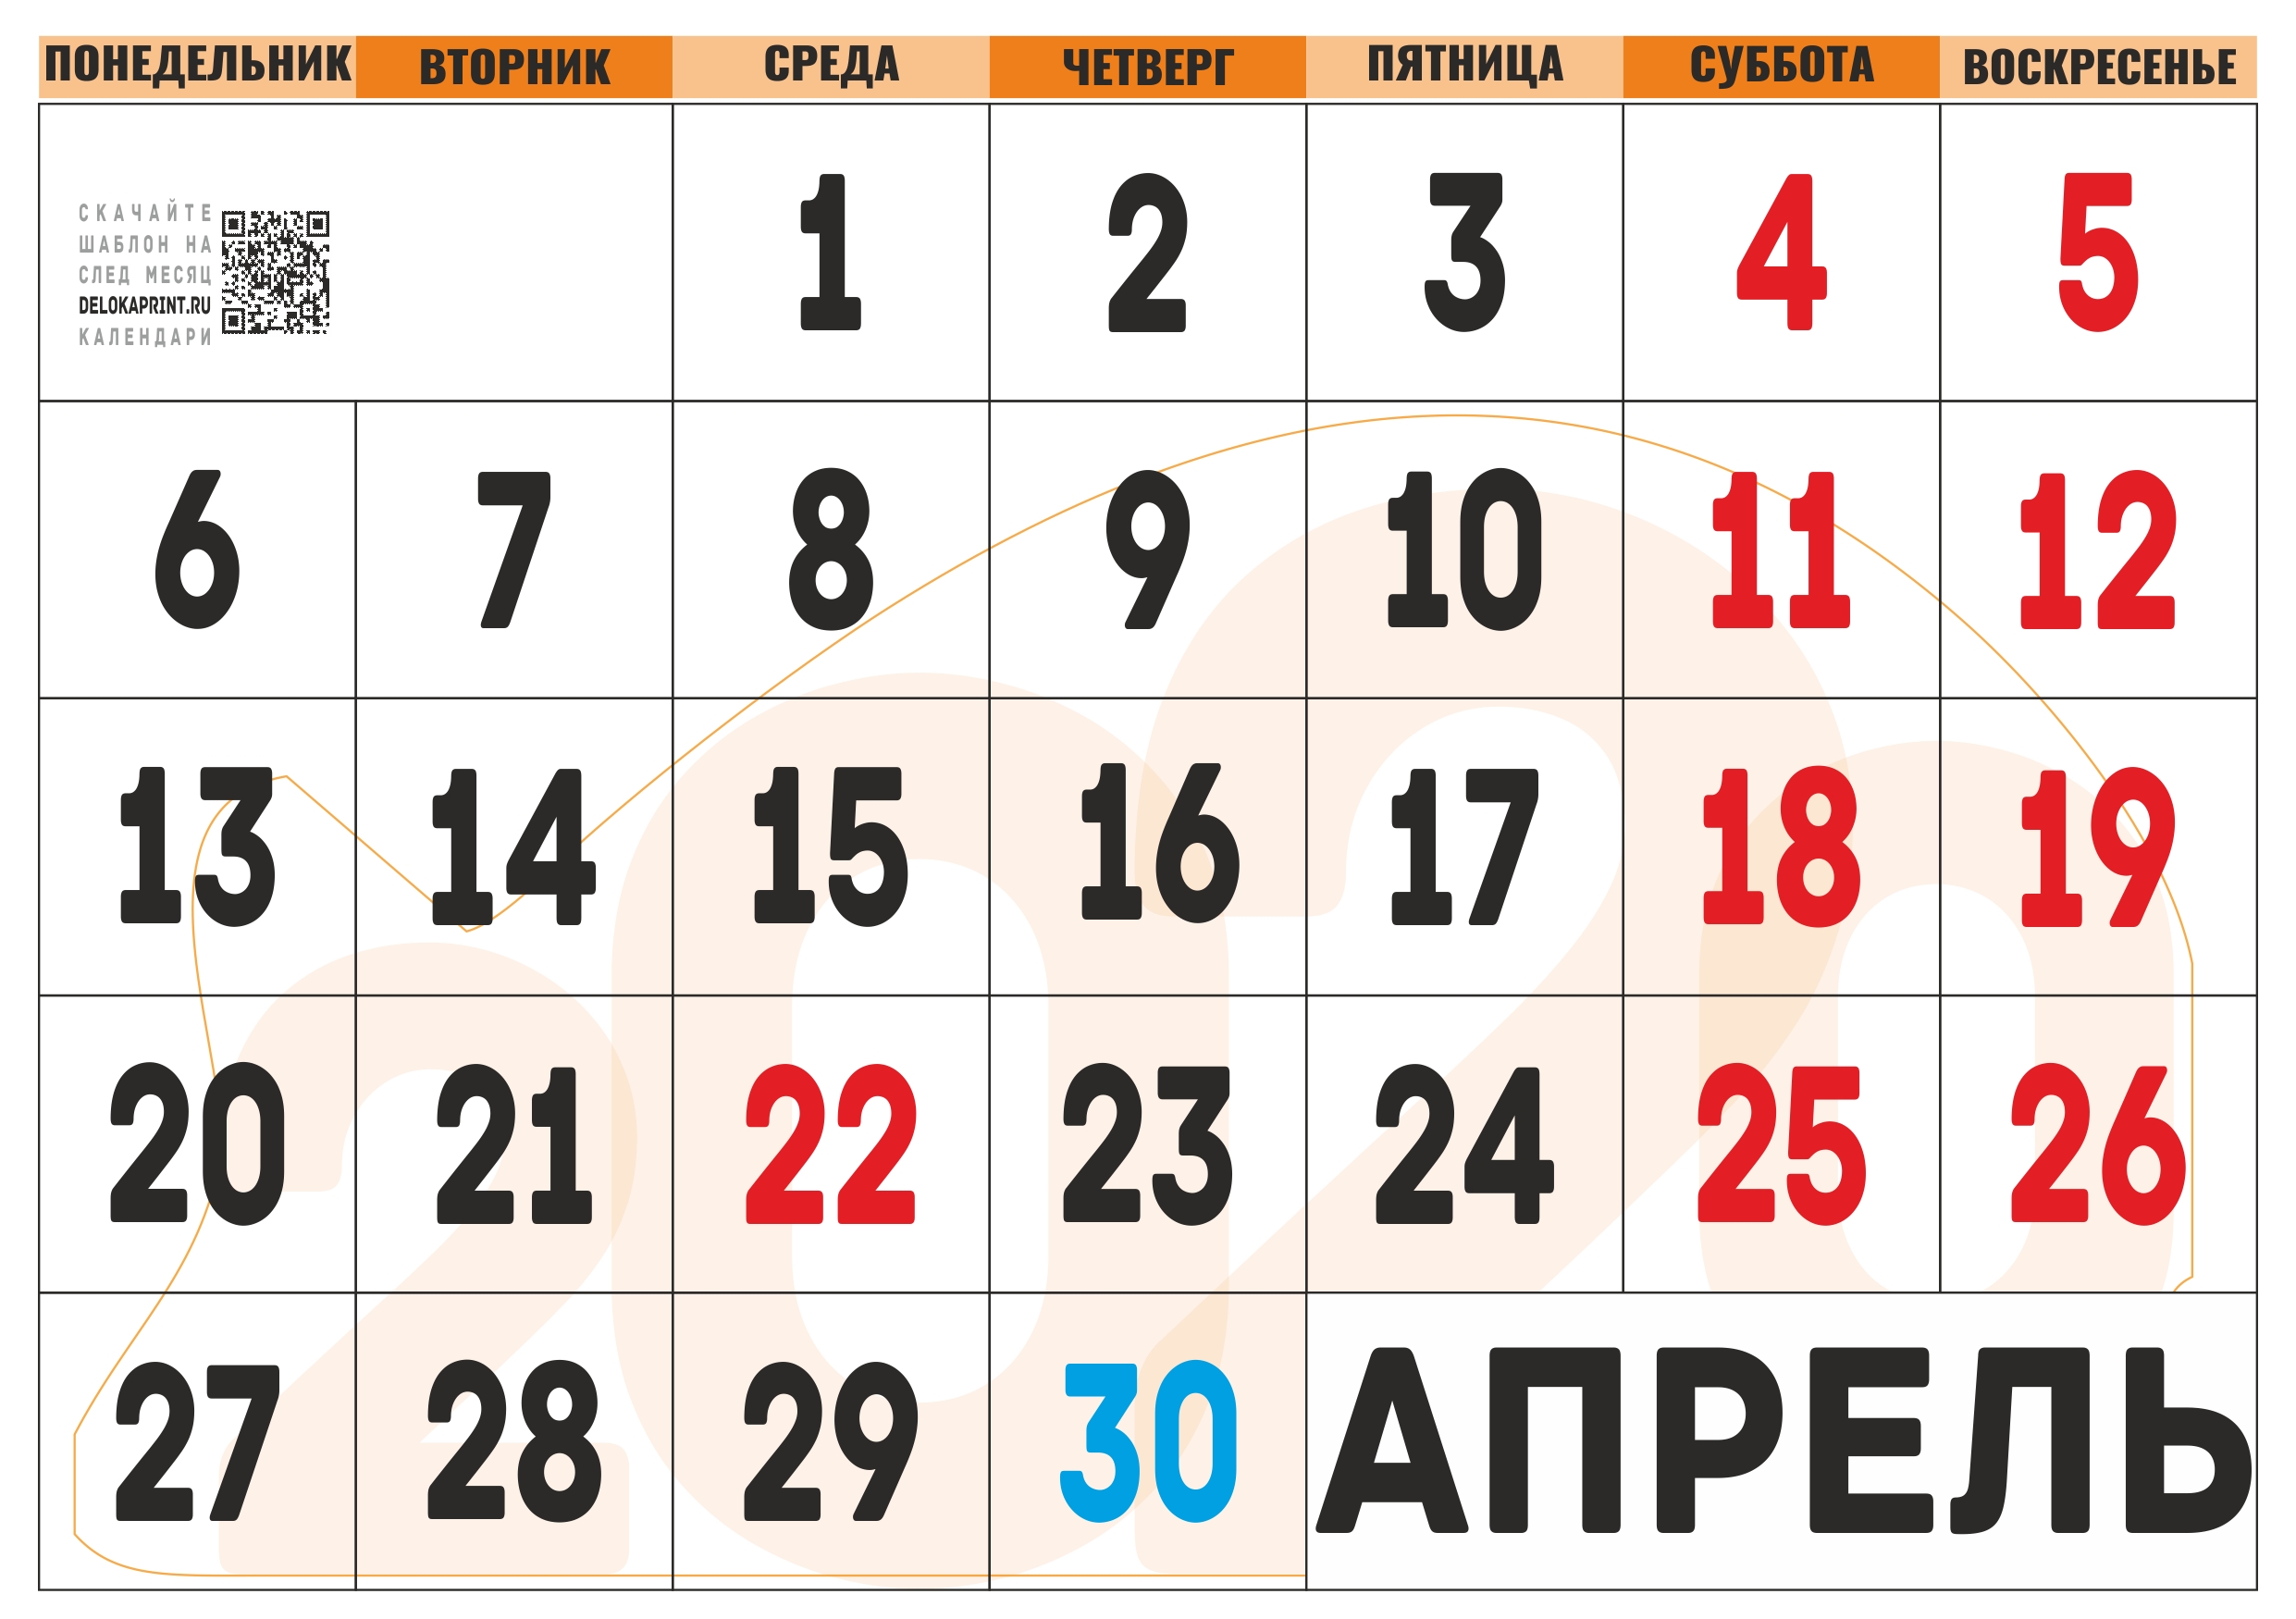 Производственный календарь на апрель месяц. Апрель 2020 года календарь. Календарь на апрель месяц. Календарик на апрель. Календарь 2020 года апрель месяц.